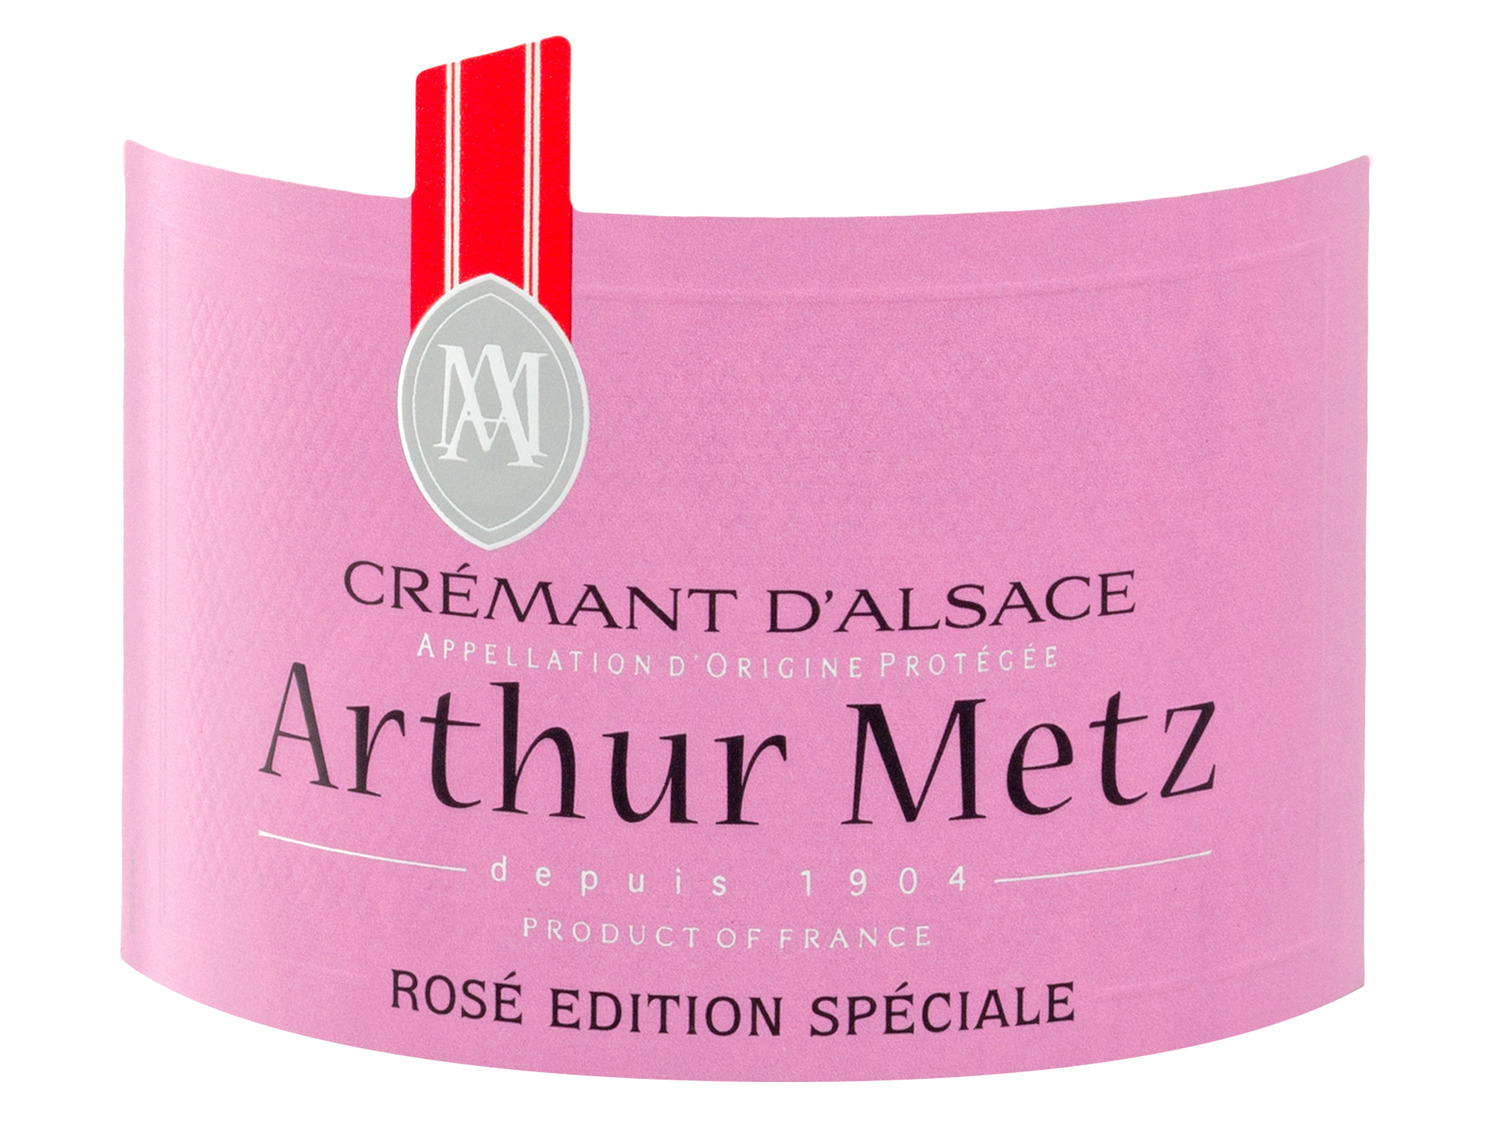 Arthur Metz Crémant d'Alsace AOP Rosé Edition Spéciale…